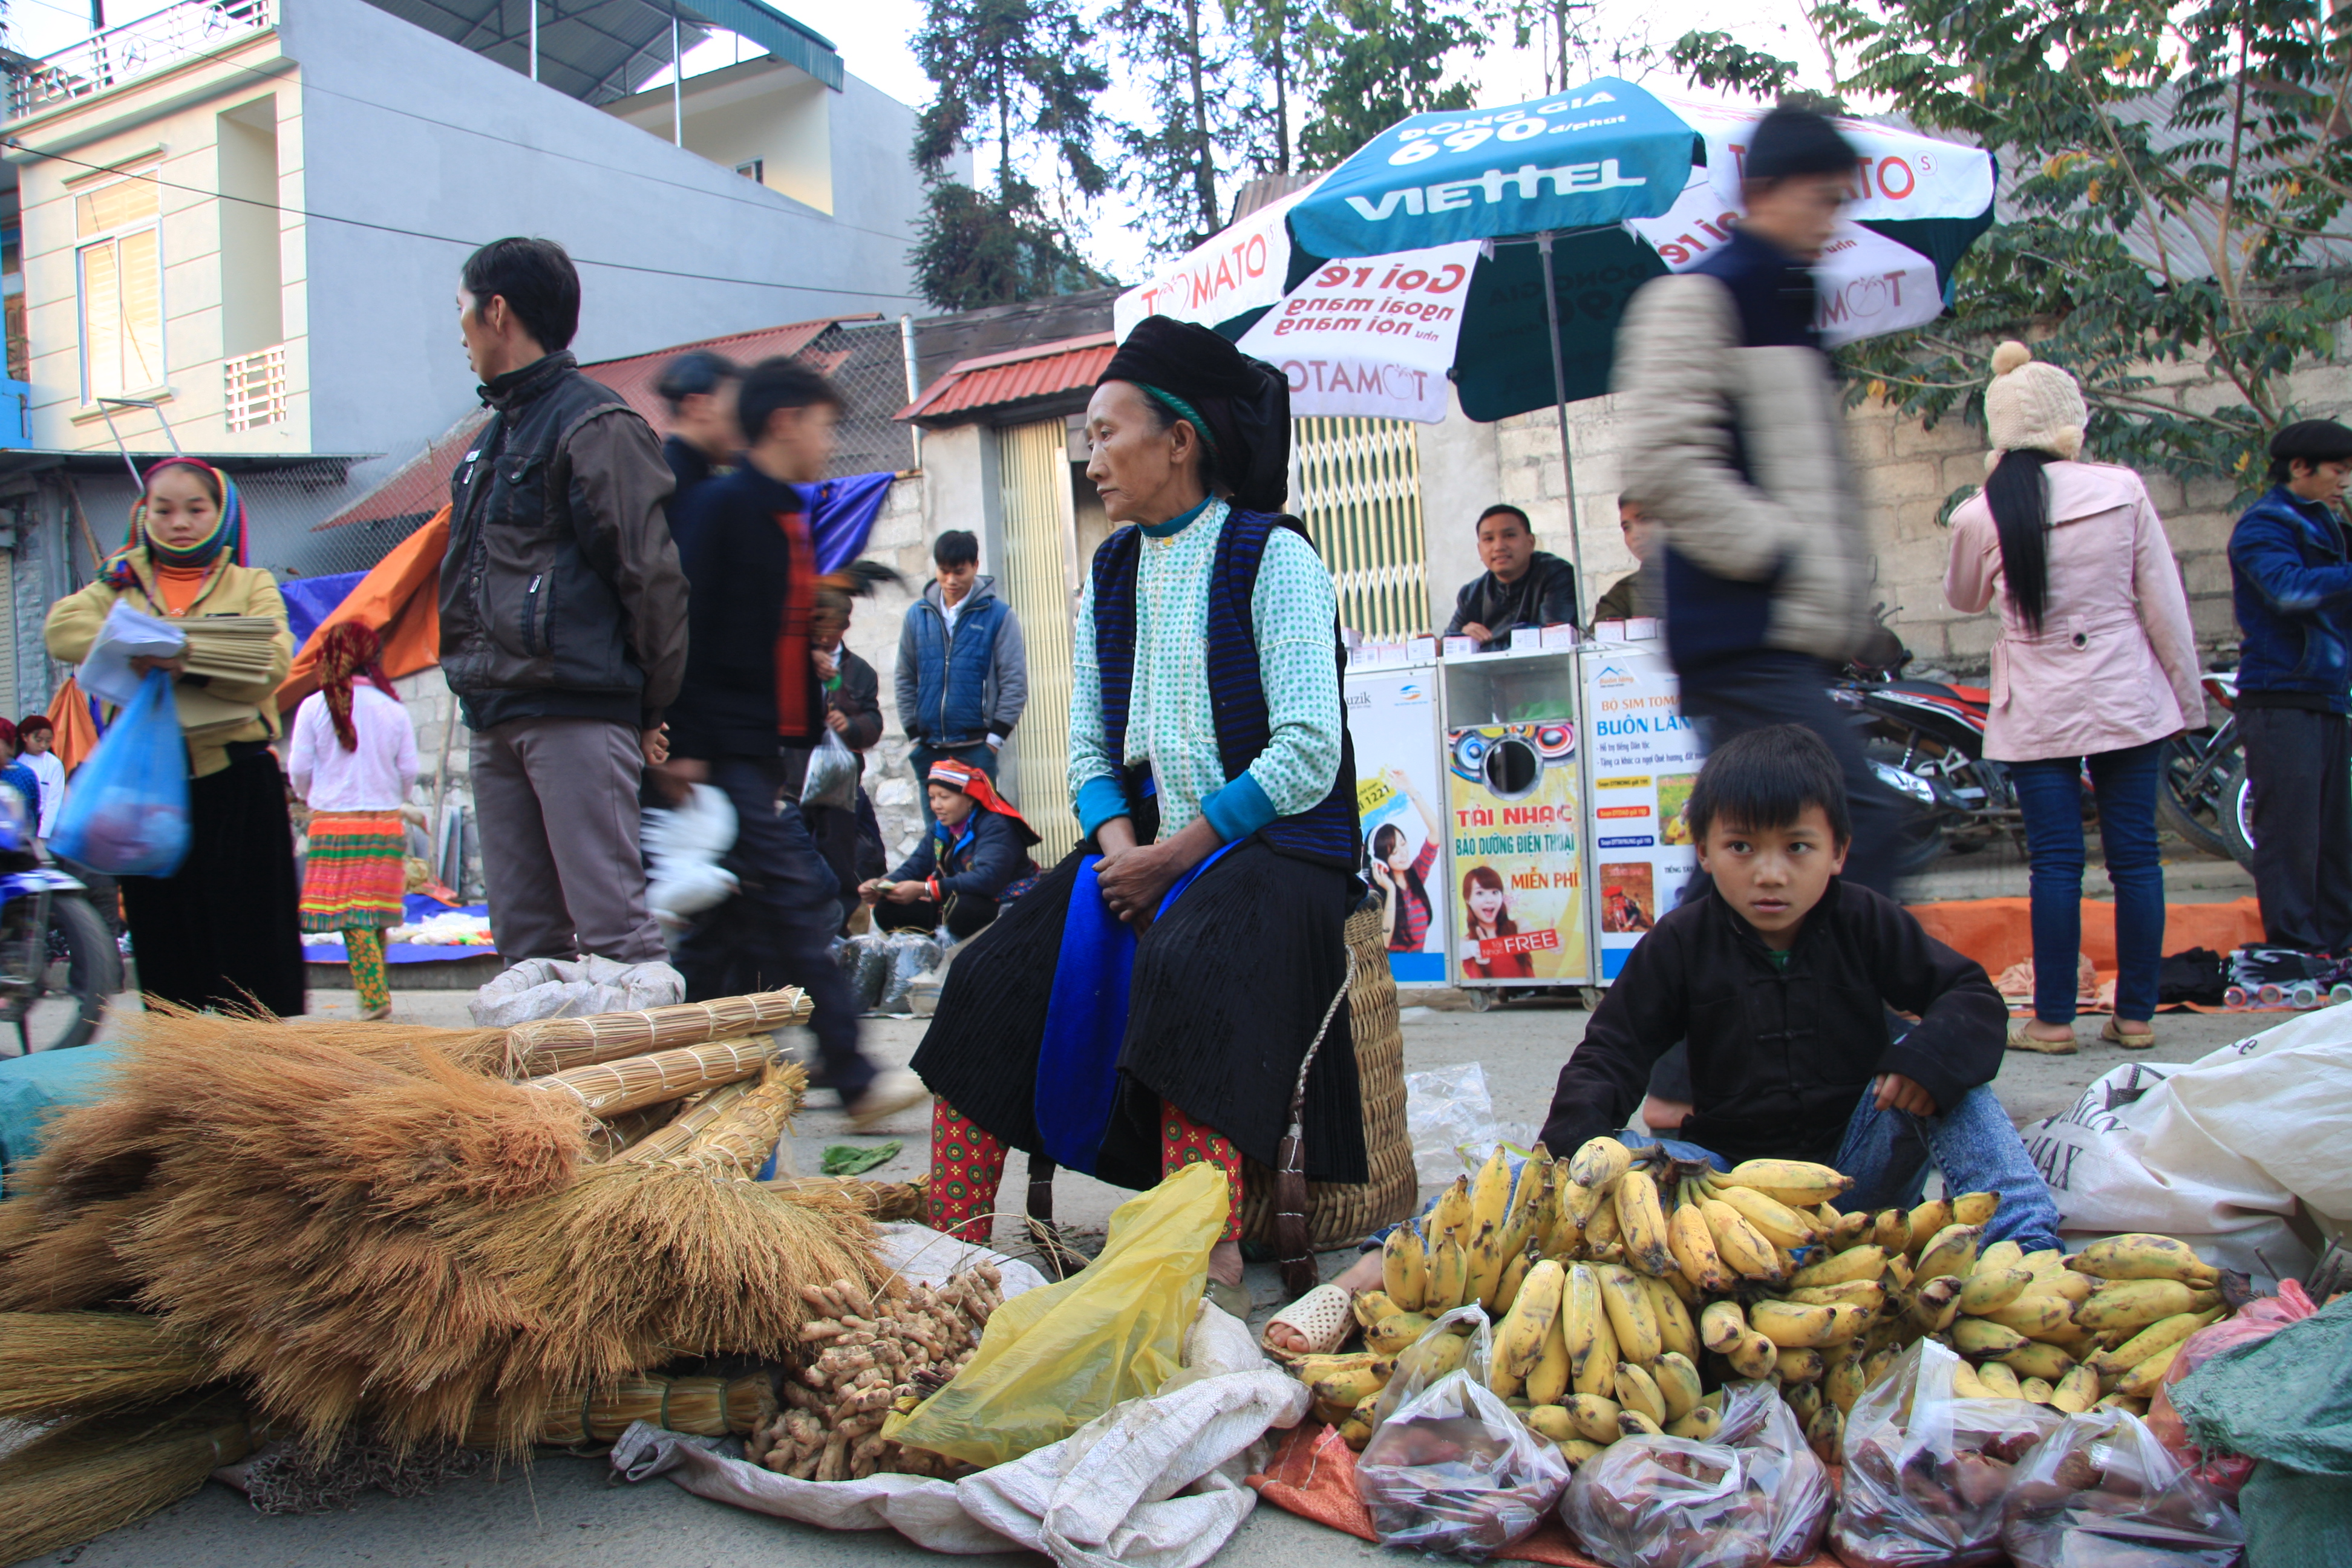 Đến chợ, người dân thường mang theo một số mặt hàng để mua bán, trao đổi như: Lợn, gà, cá suối, mật ong, các loại rau rừng, thảo dược, công cụ sản xuất… 